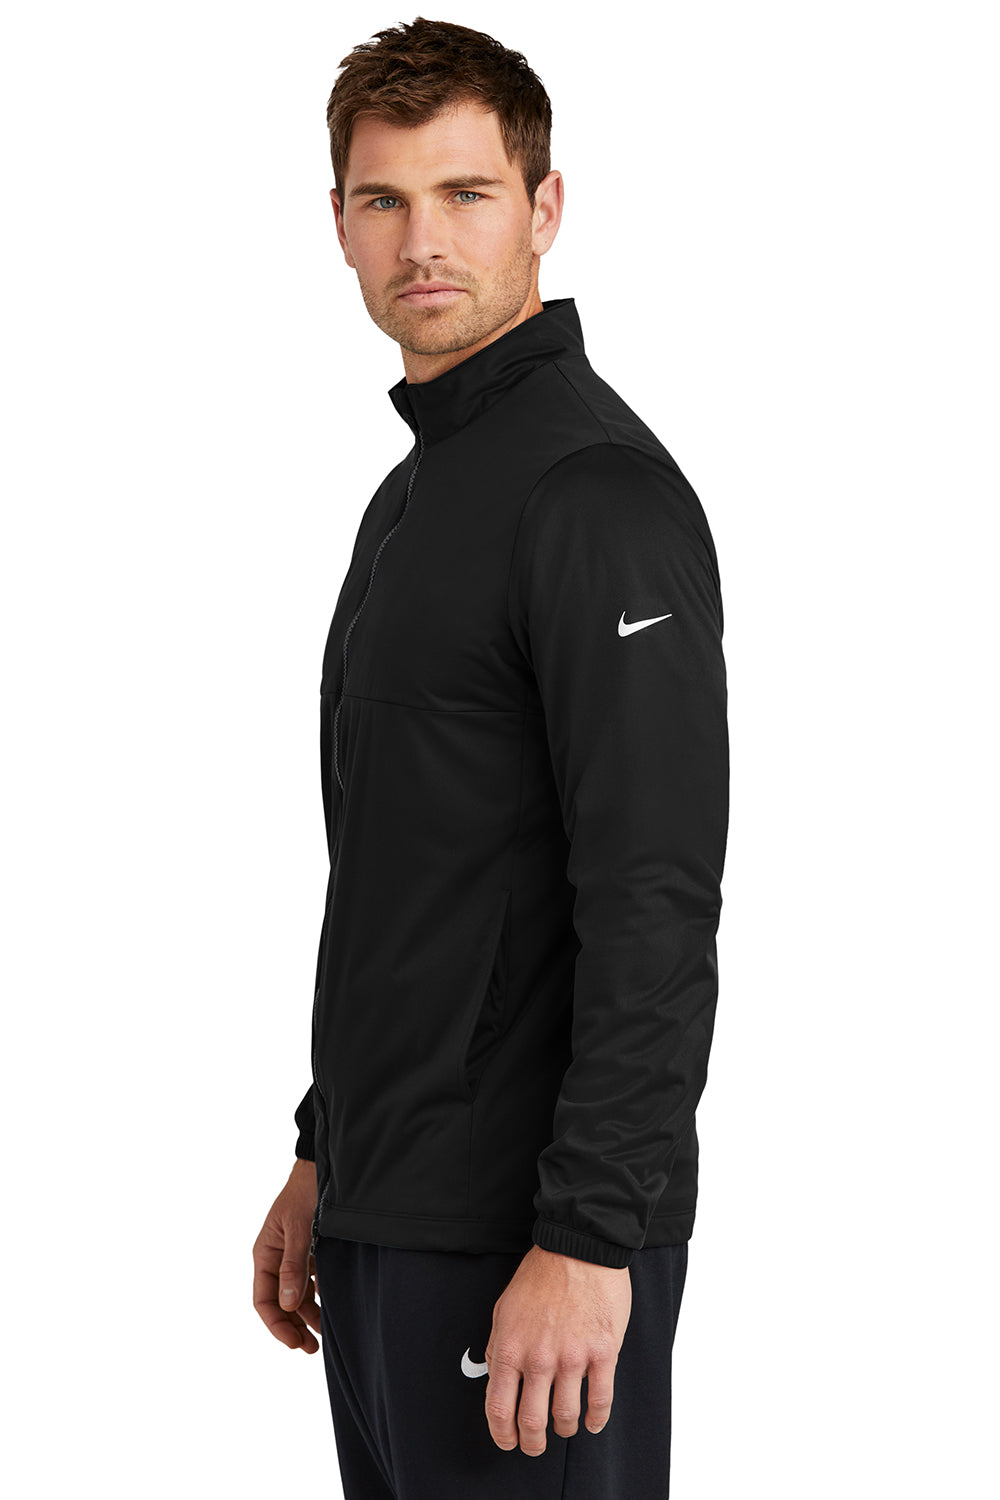 Nike NKDX6716 Mens Storm-Fit Wind & Water Resistant Full Zip Jacket Black Model Side